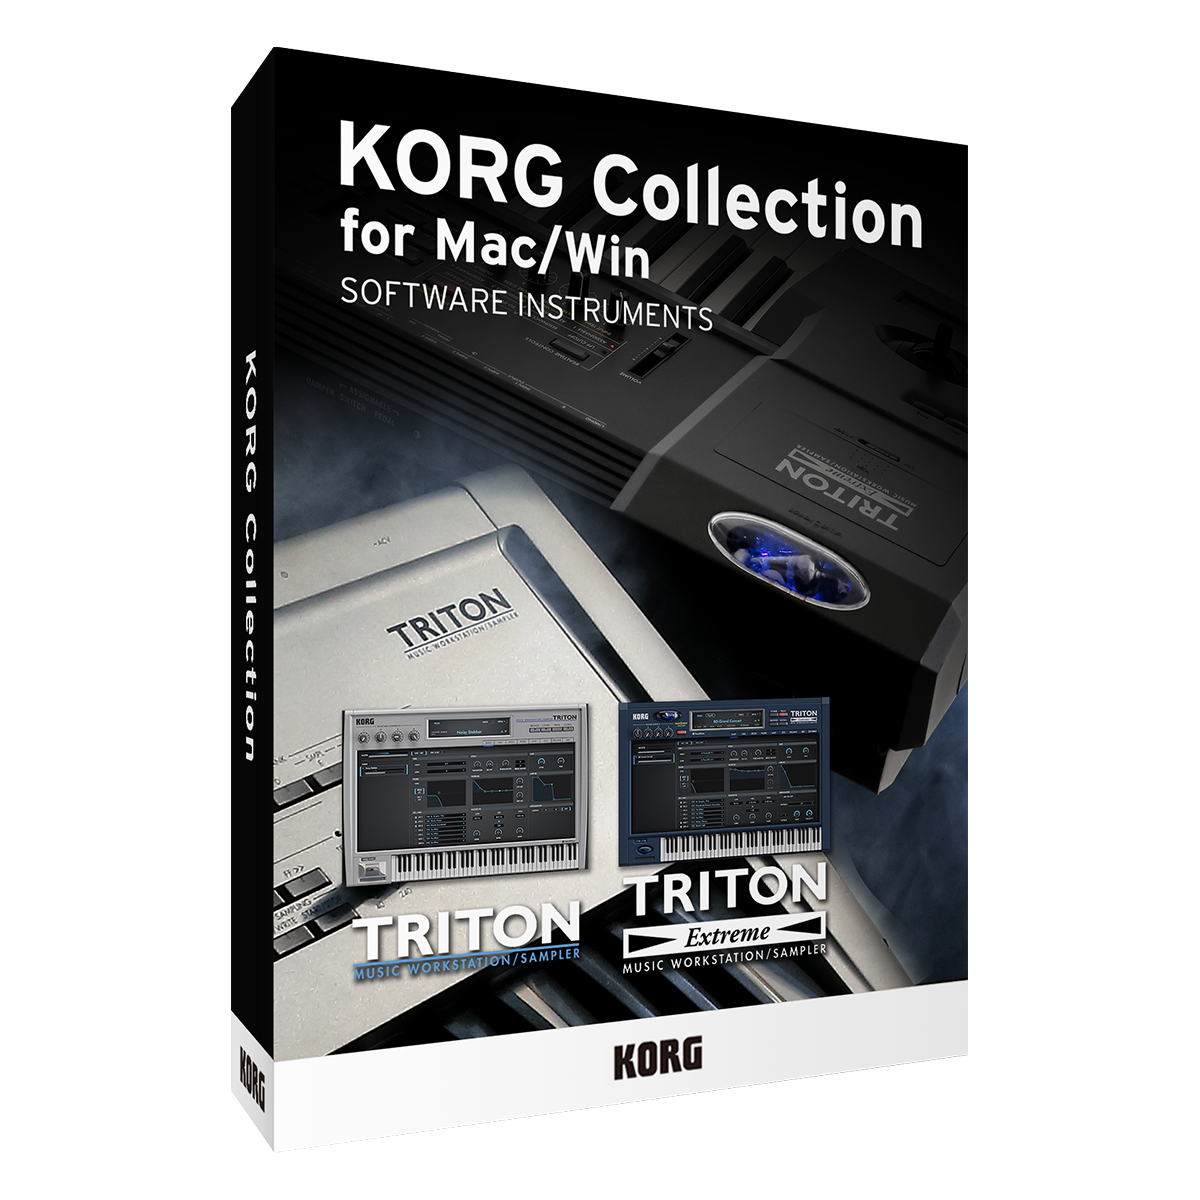 KORG Collection 3 - TRITON (TRITON Extreme)